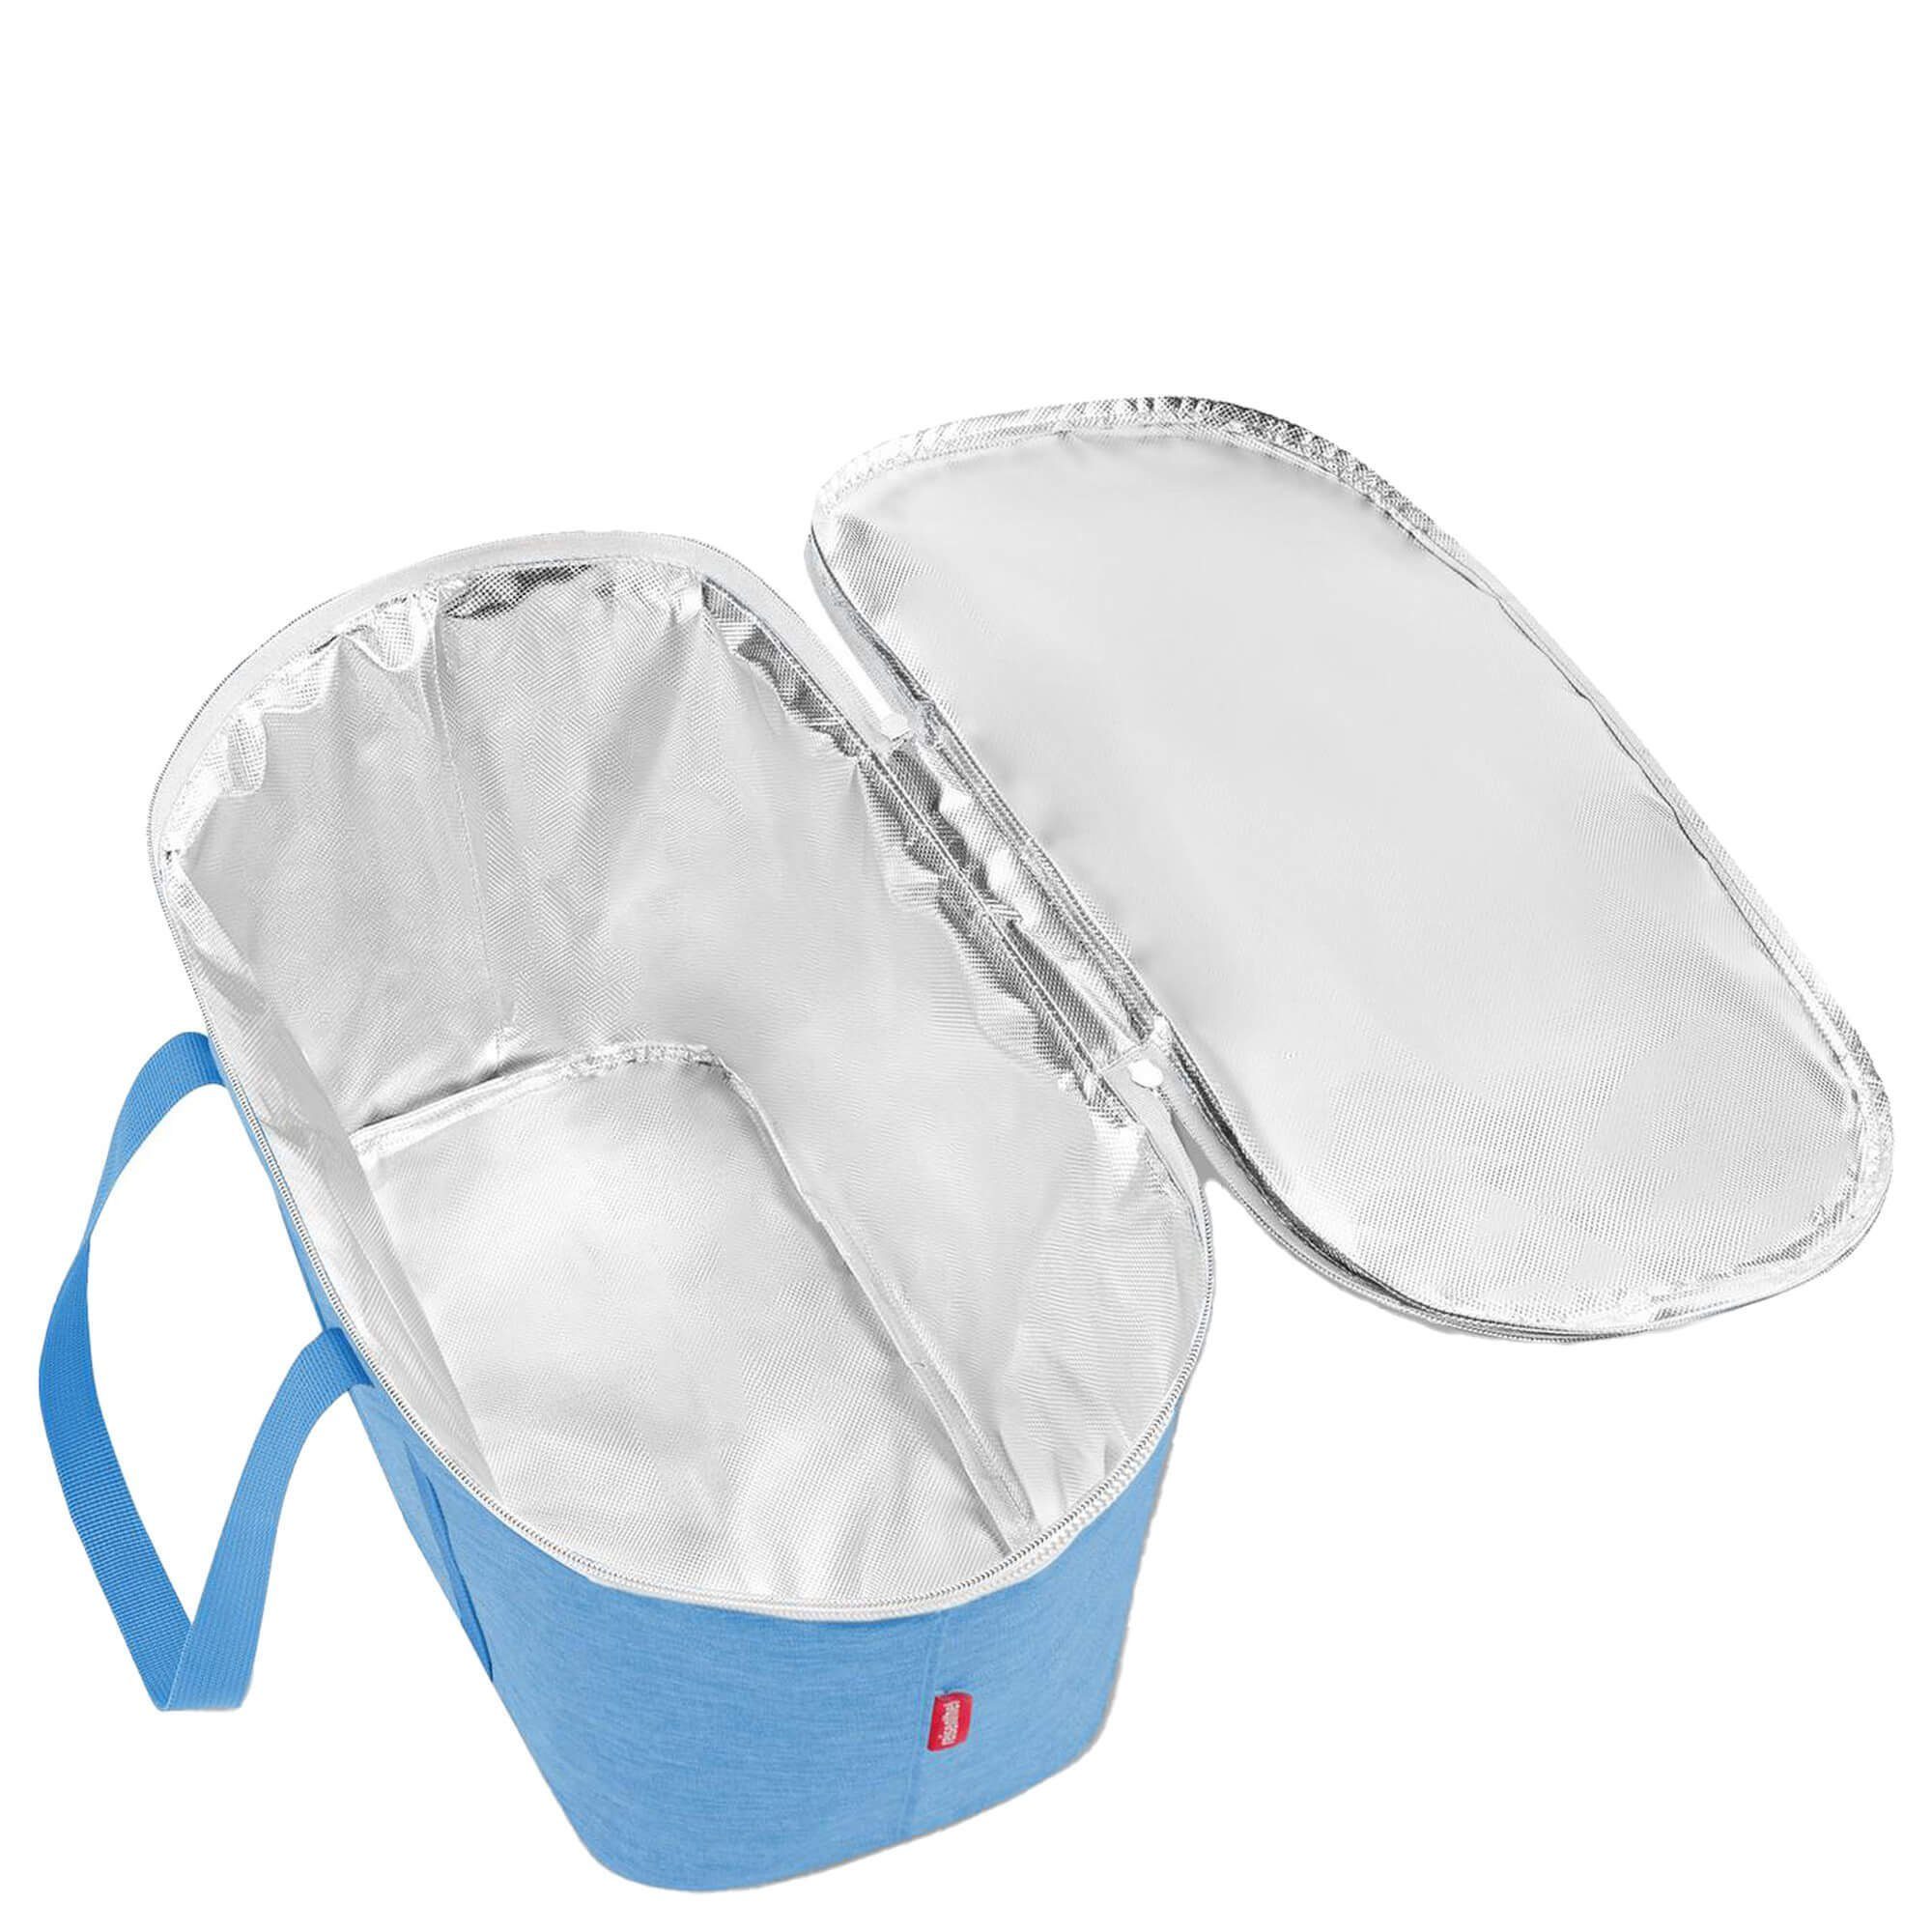 REISENTHEL® cm, l Einkaufsbeutel twist thermo coolerbag azure Kühltasche 44.5 20 -